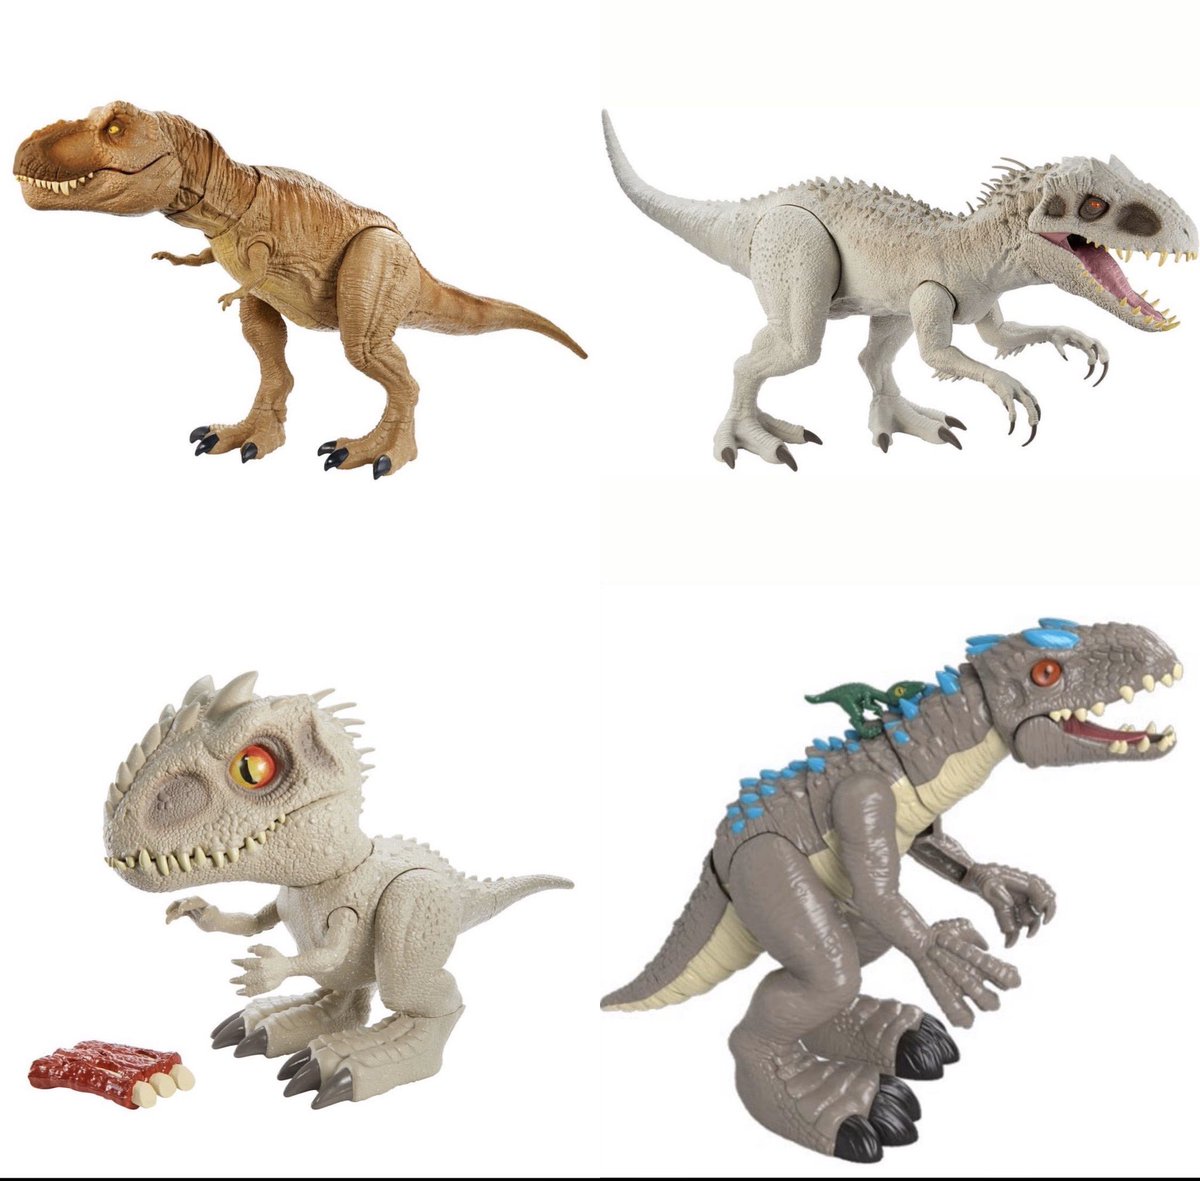 new indominus rex toy